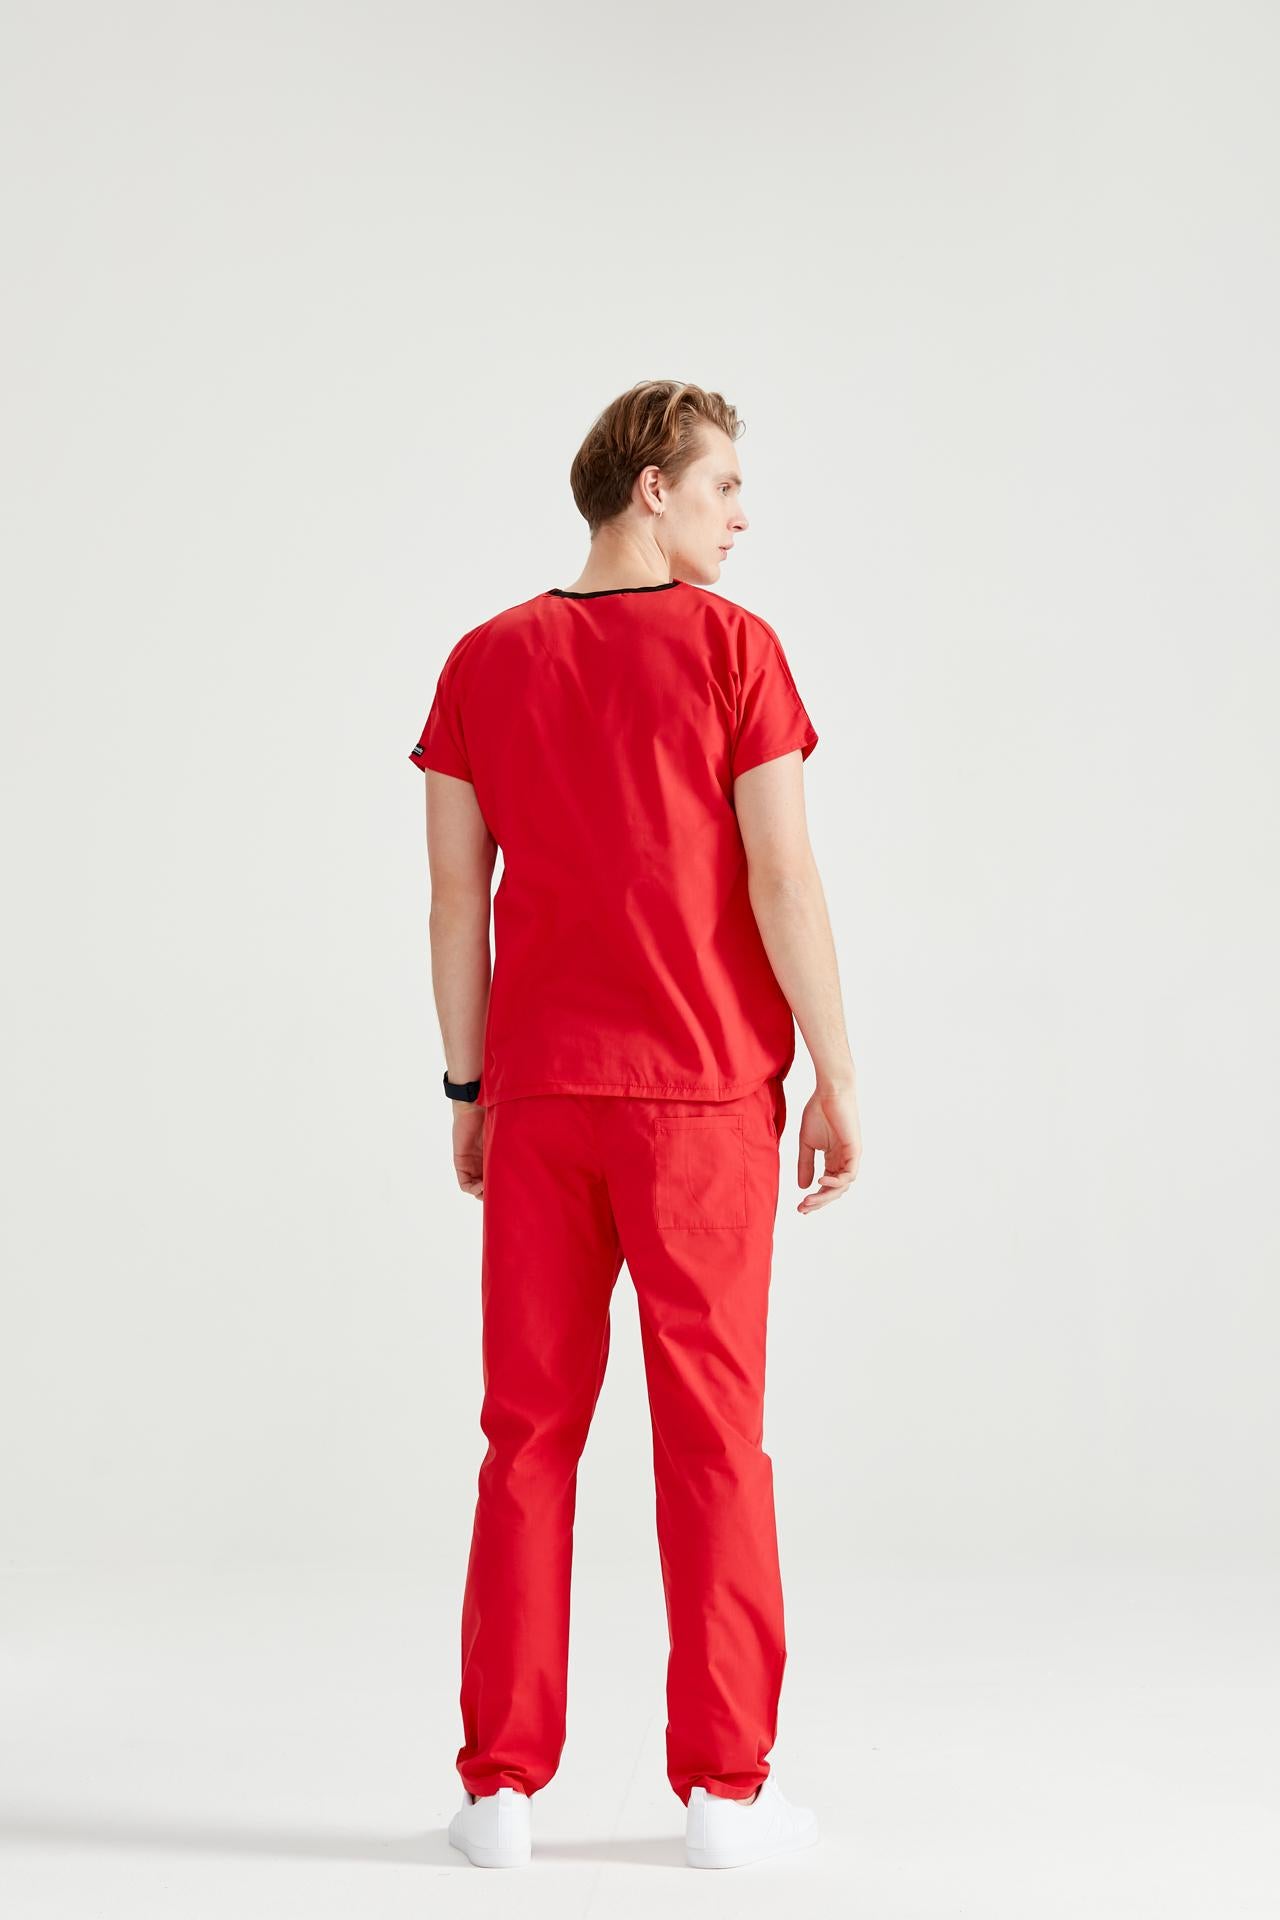 Asistent medical imbracat in costum medical verde chirurgical rosu - red, pentru barbati, vedere din spate